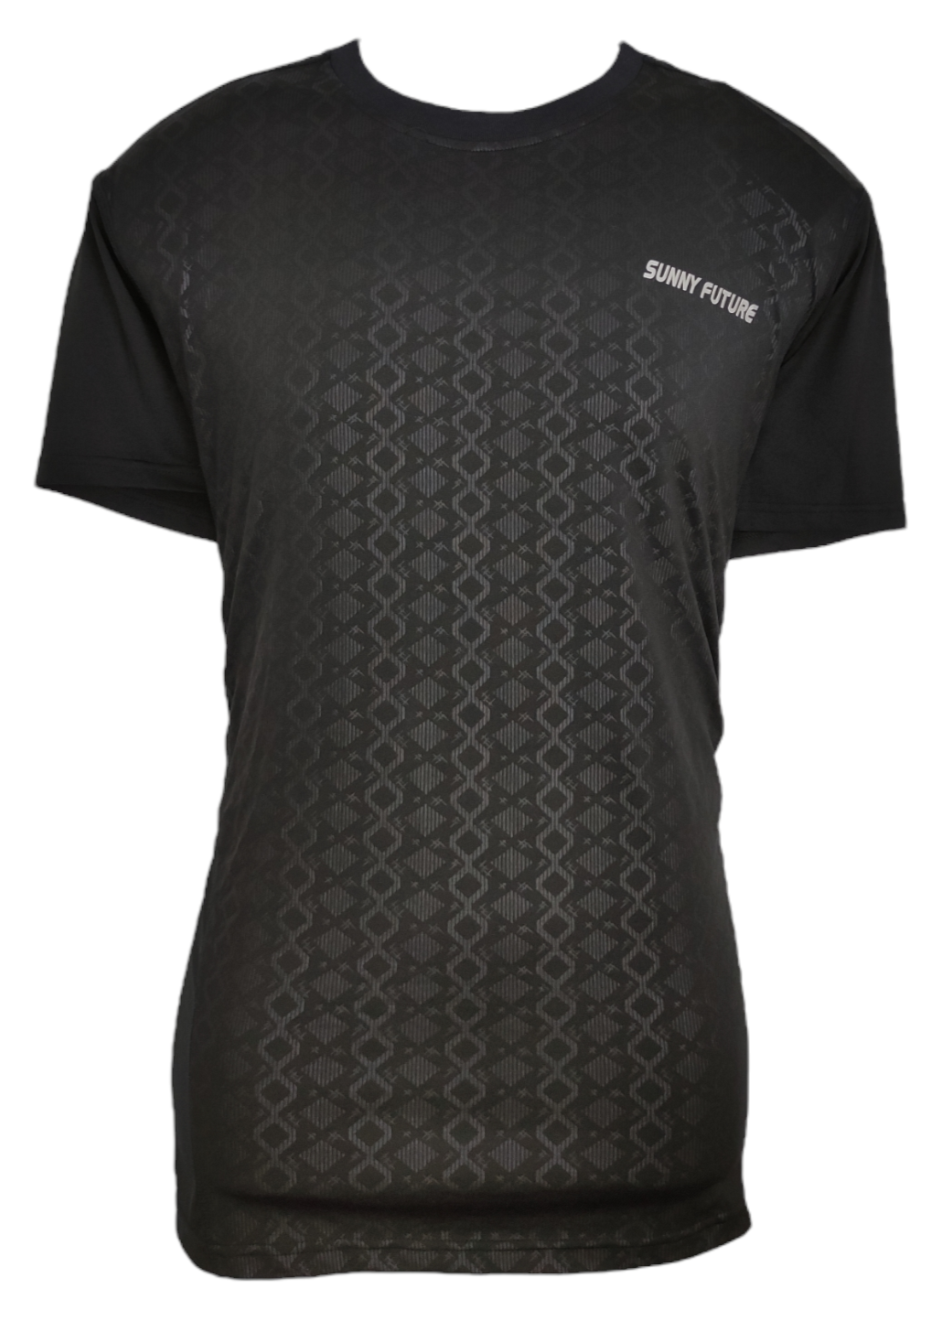 Ανδρικό Αθλητικό T- Shirt SUNNY FUTURE σε Μαύρο χρώμα (Large)